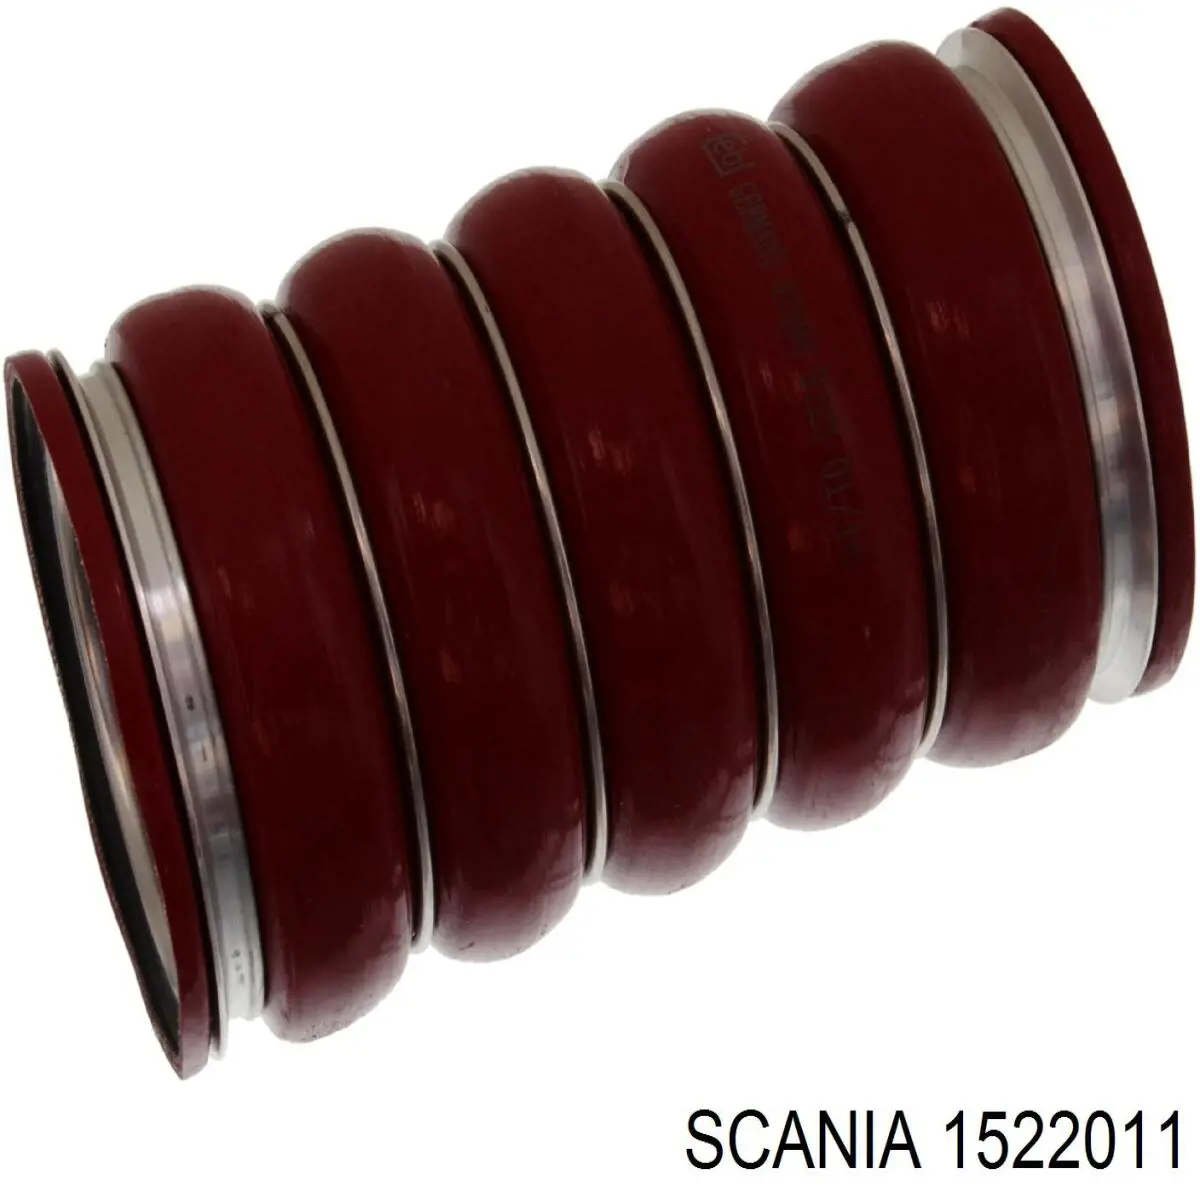 1522011 Scania mangueira (cano derivado de intercooler)